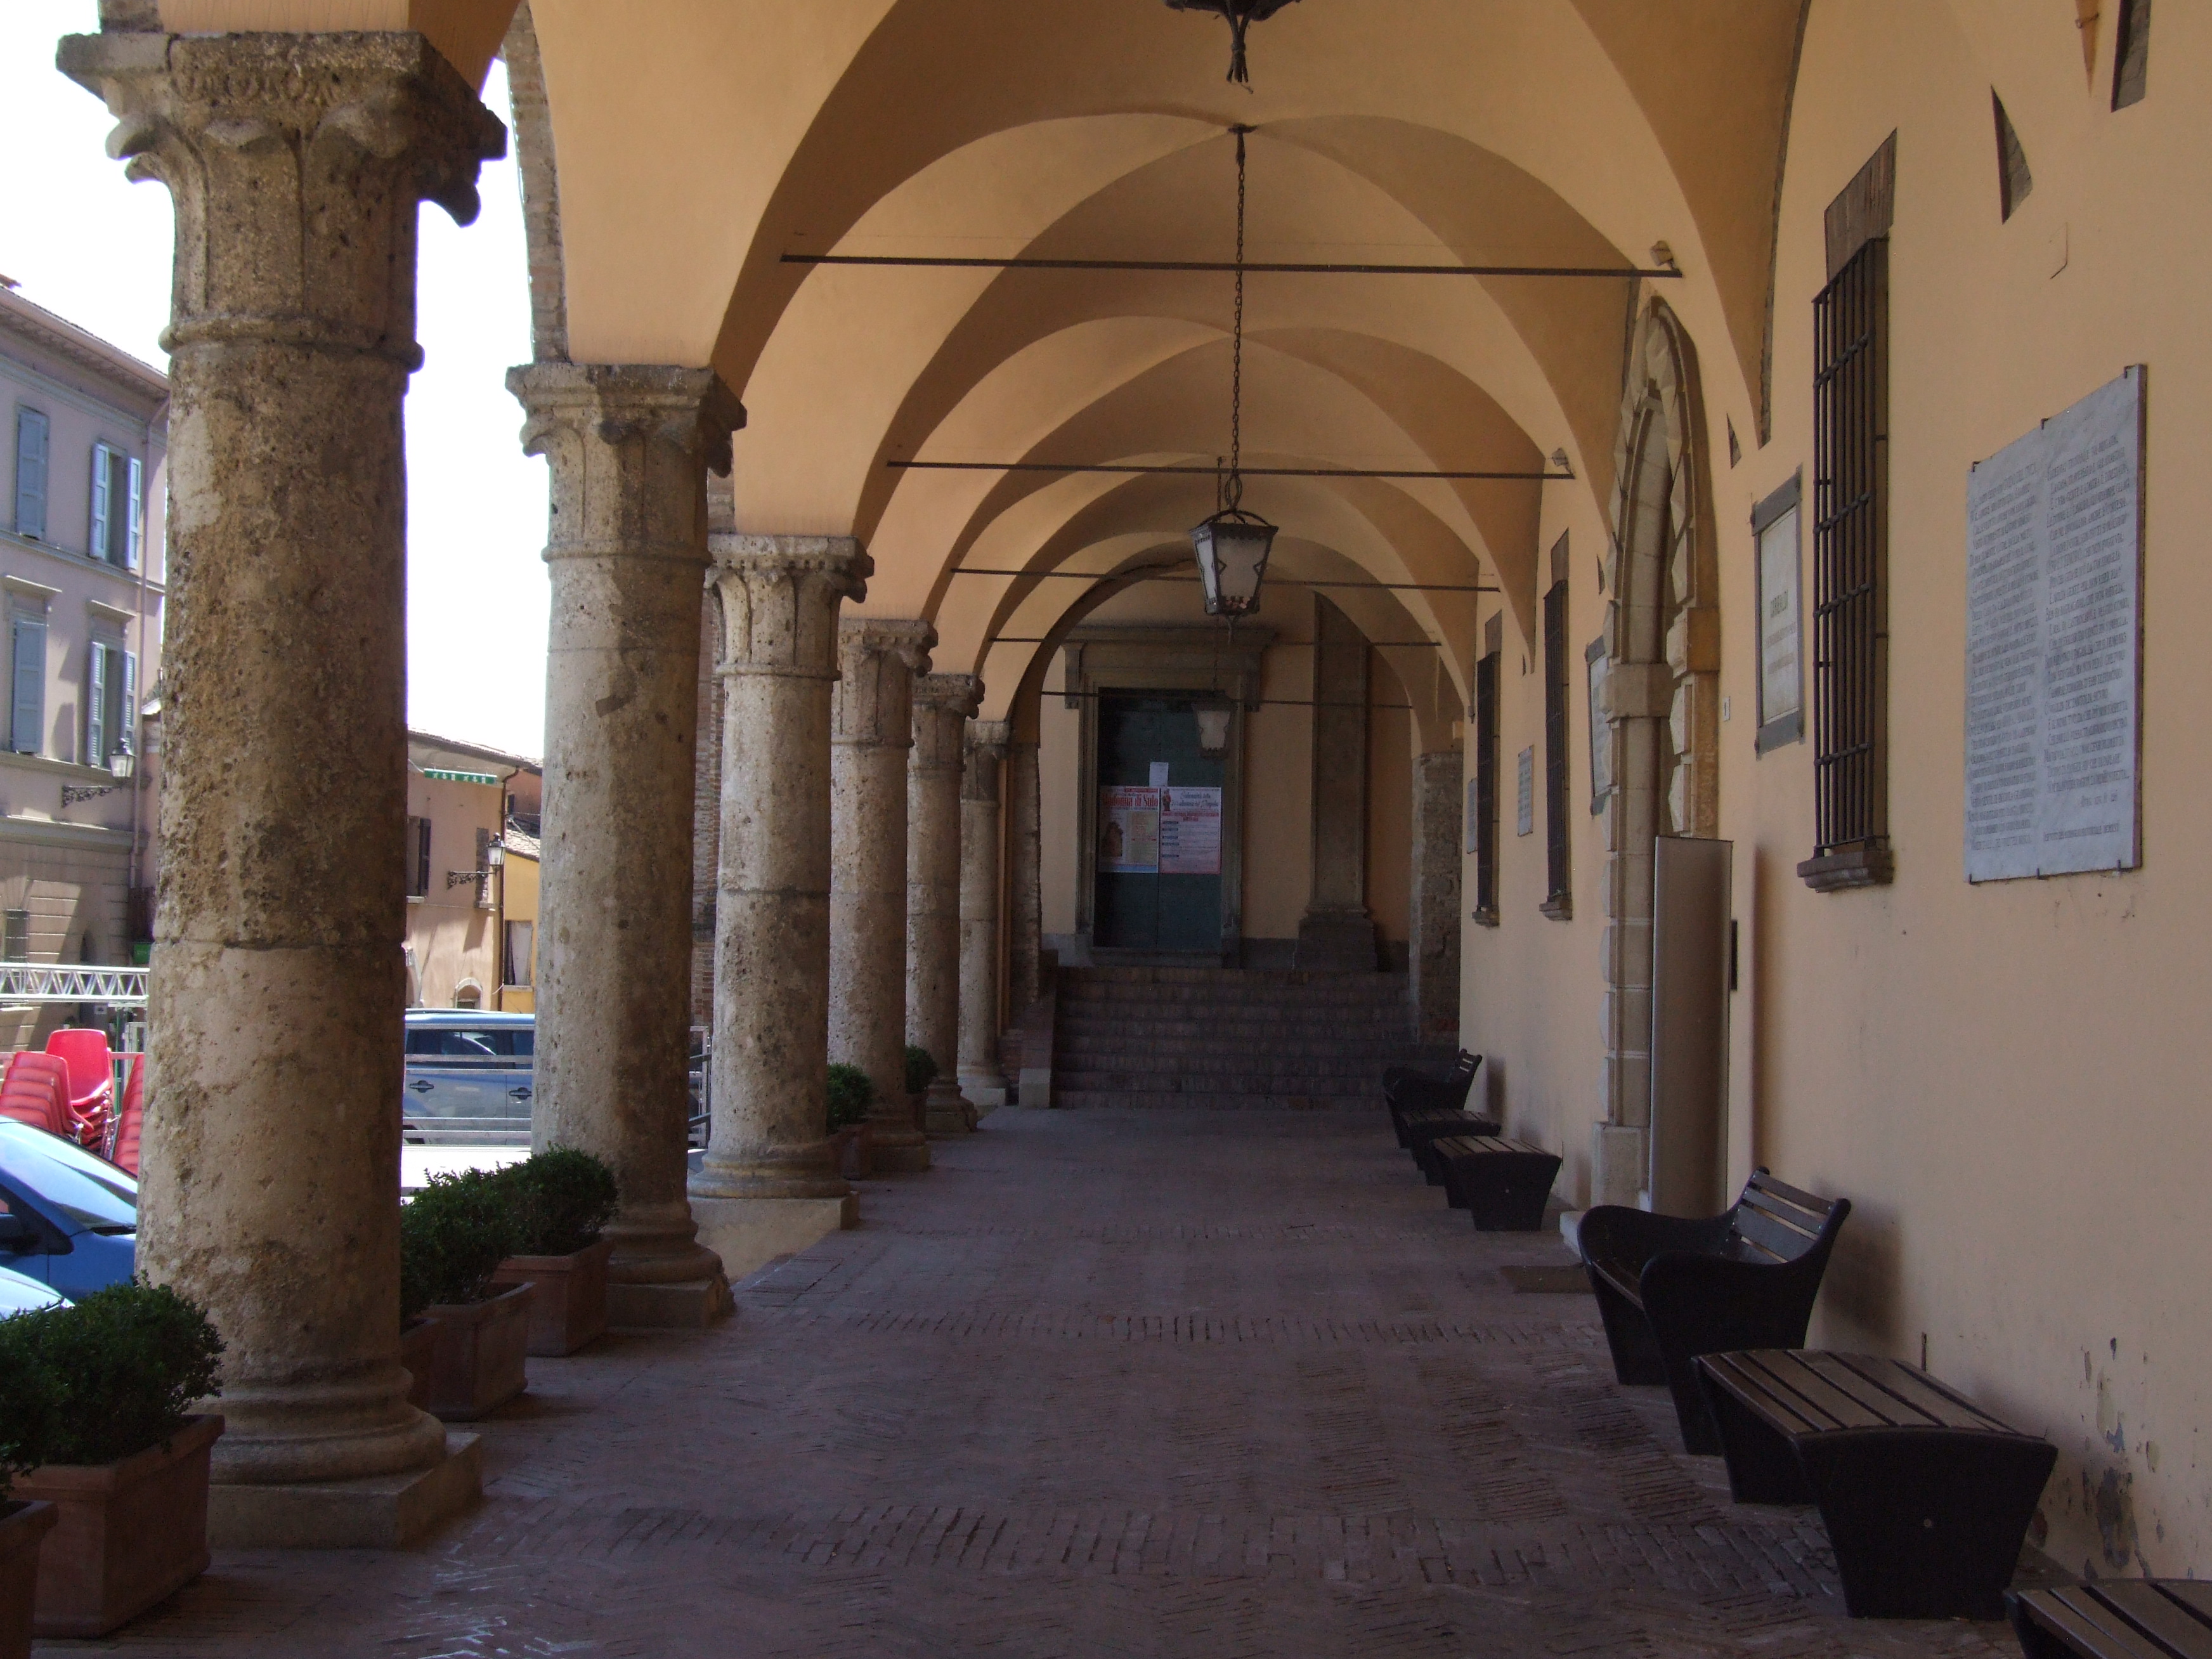 photo: https://upload.wikimedia.org/wikipedia/commons/3/34/Palazzo_Comunale_-_Bertinoro_2.jpg